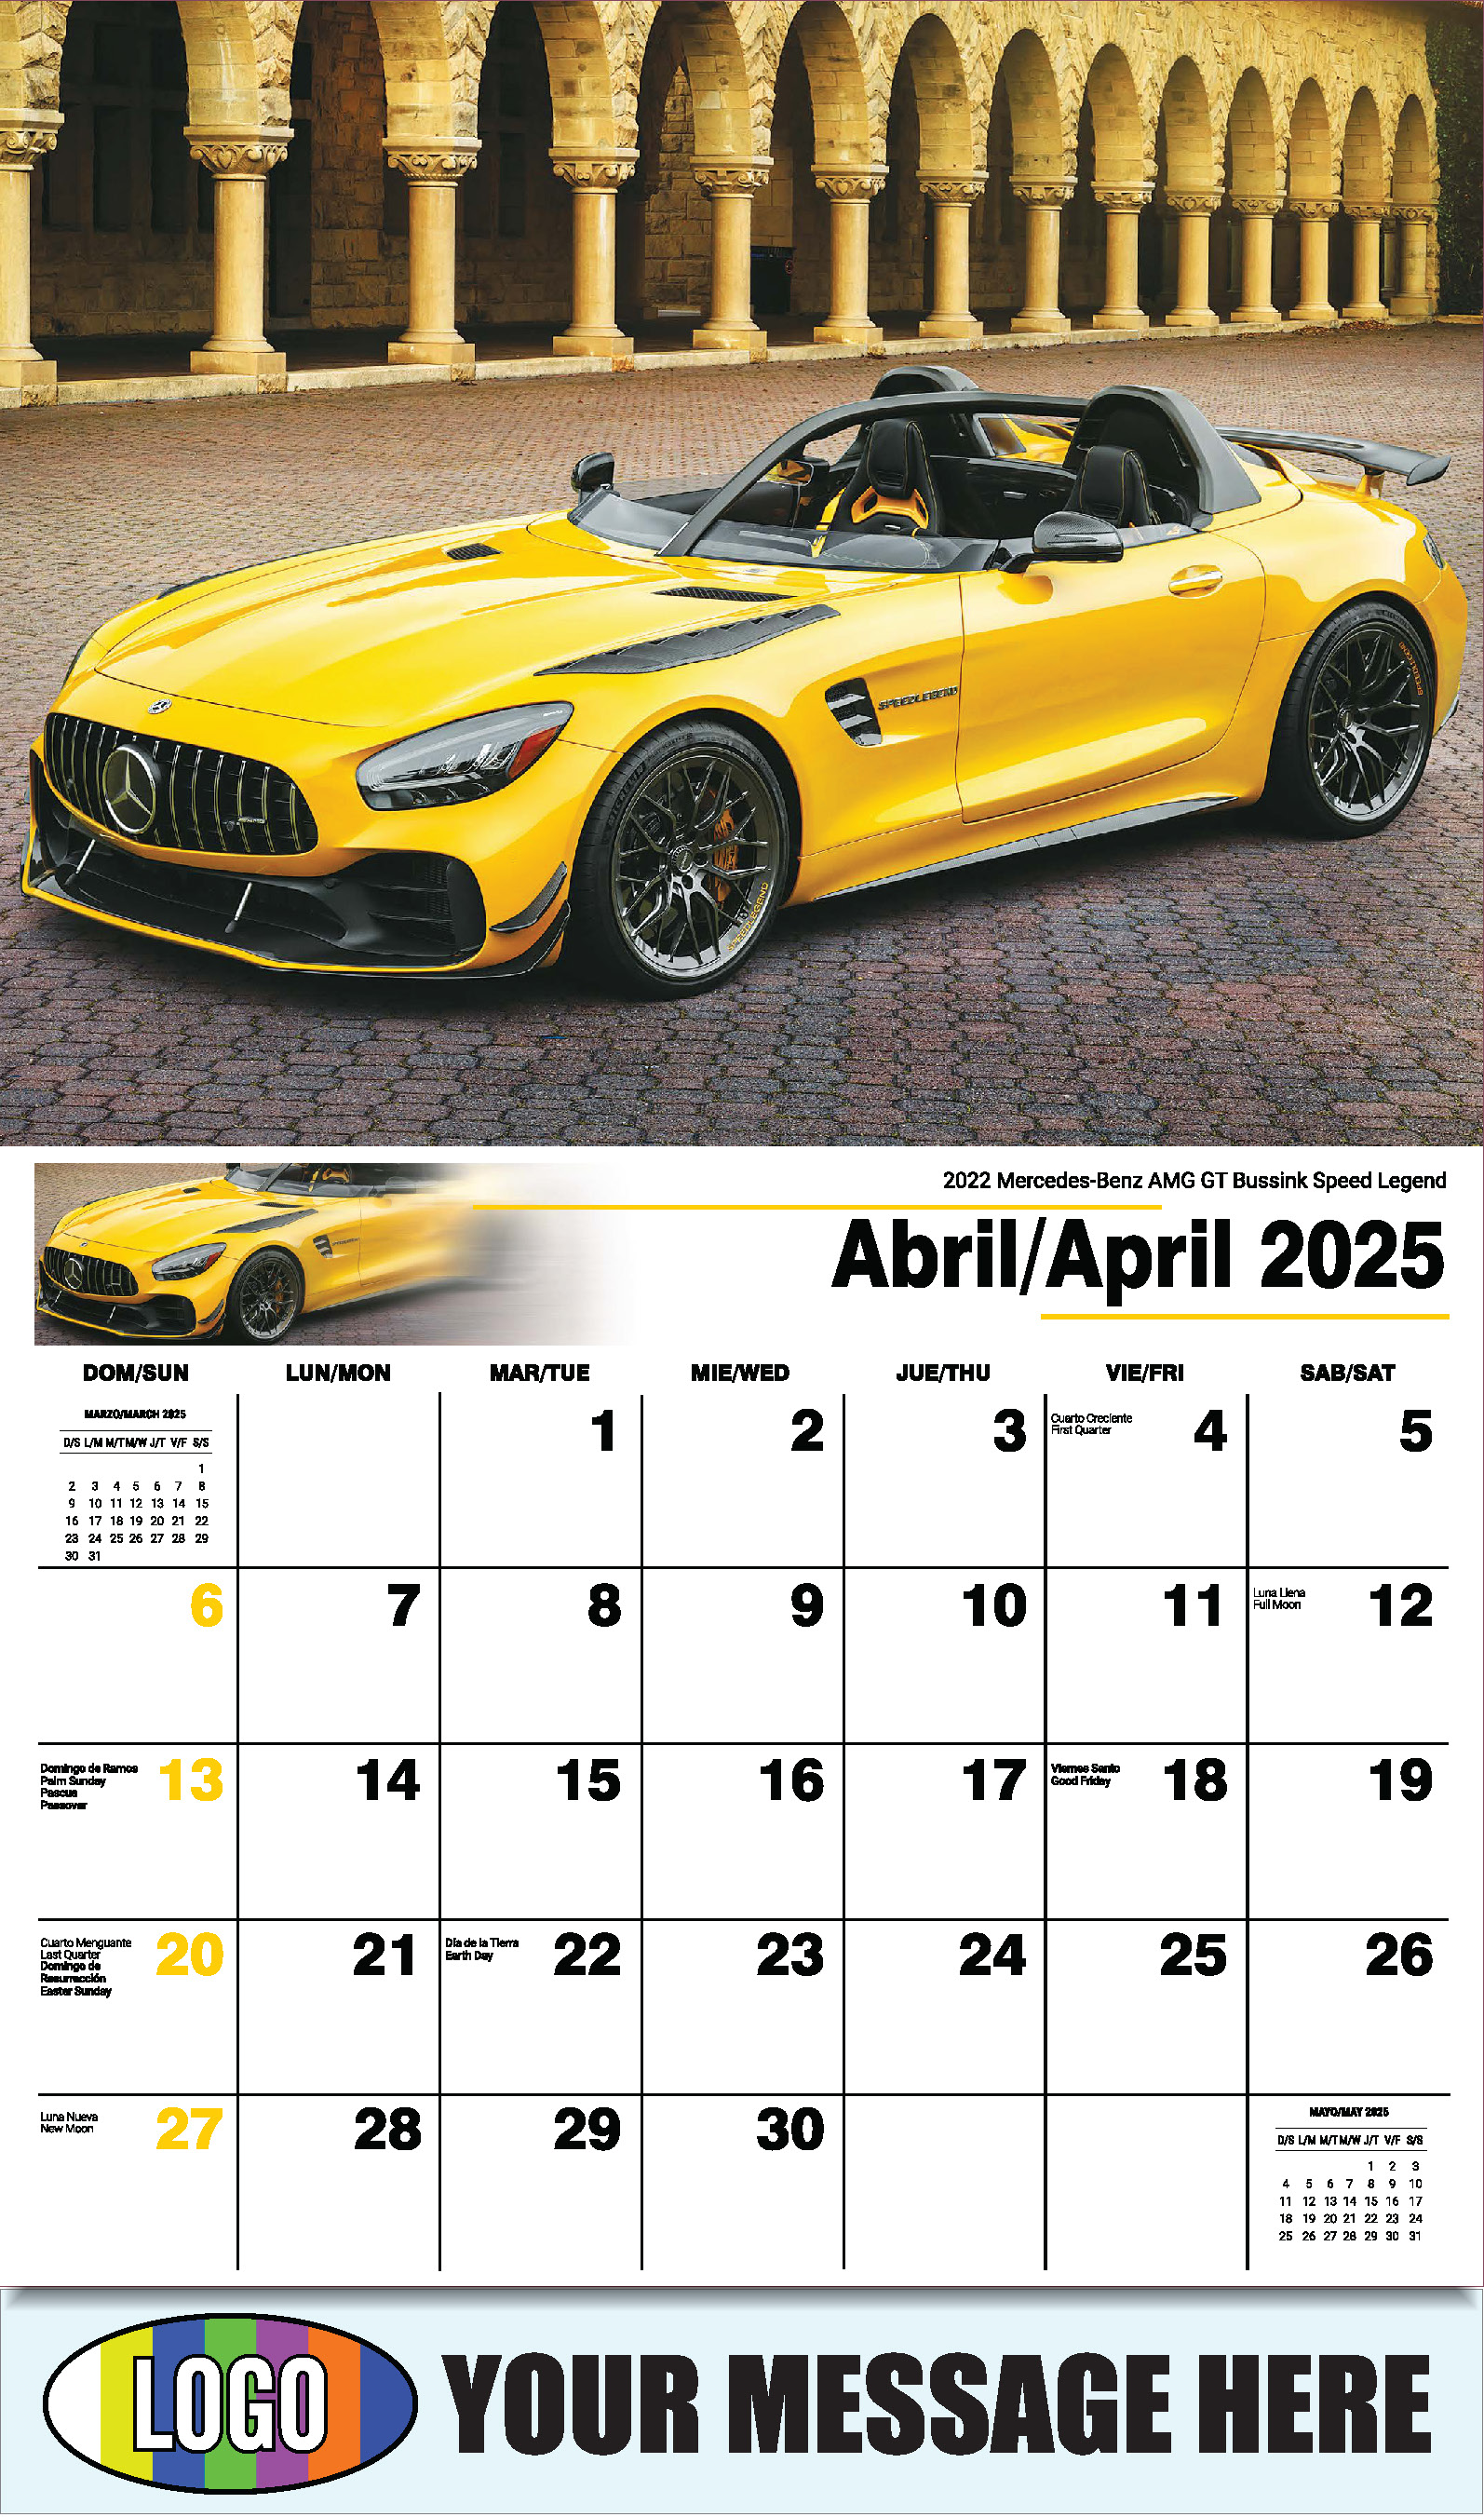 Exotic Cars 2025 Bilingual Automotive Business Promotional Calendar - April